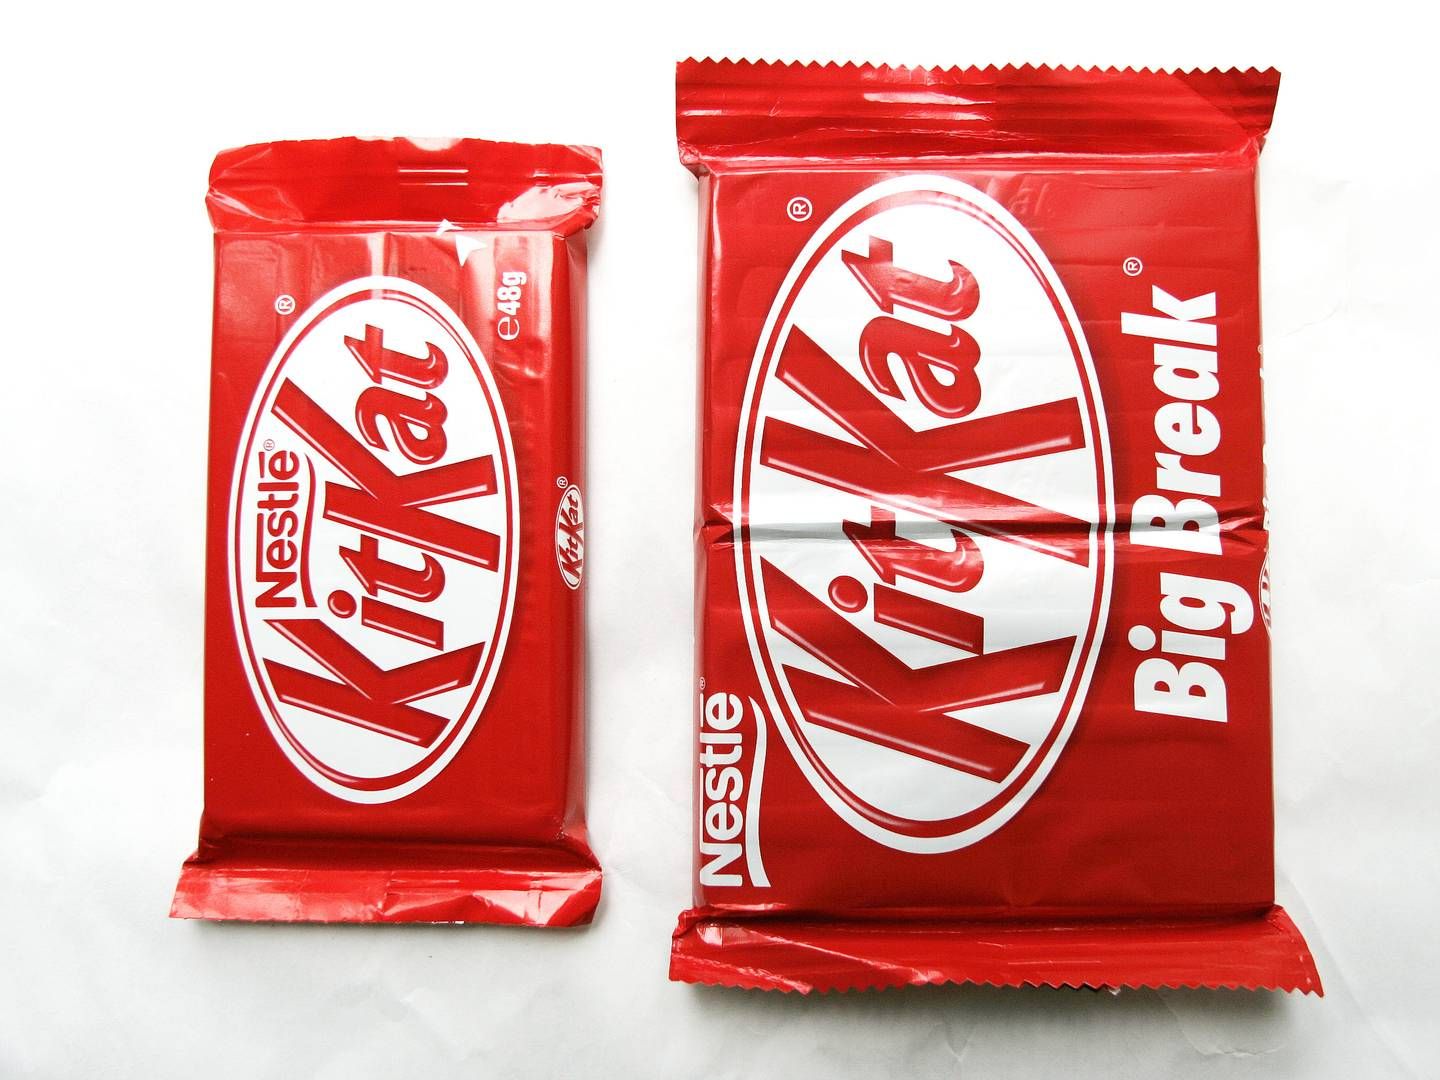 Nestlé vil blandt andet lancere en Kitkat-linje på anlægget i byen Säo Paulo, der ifølge Nestlé er det største chokoladeproduktionsanlæg i latinamerika. | Foto: Jesper Stormly Hansen